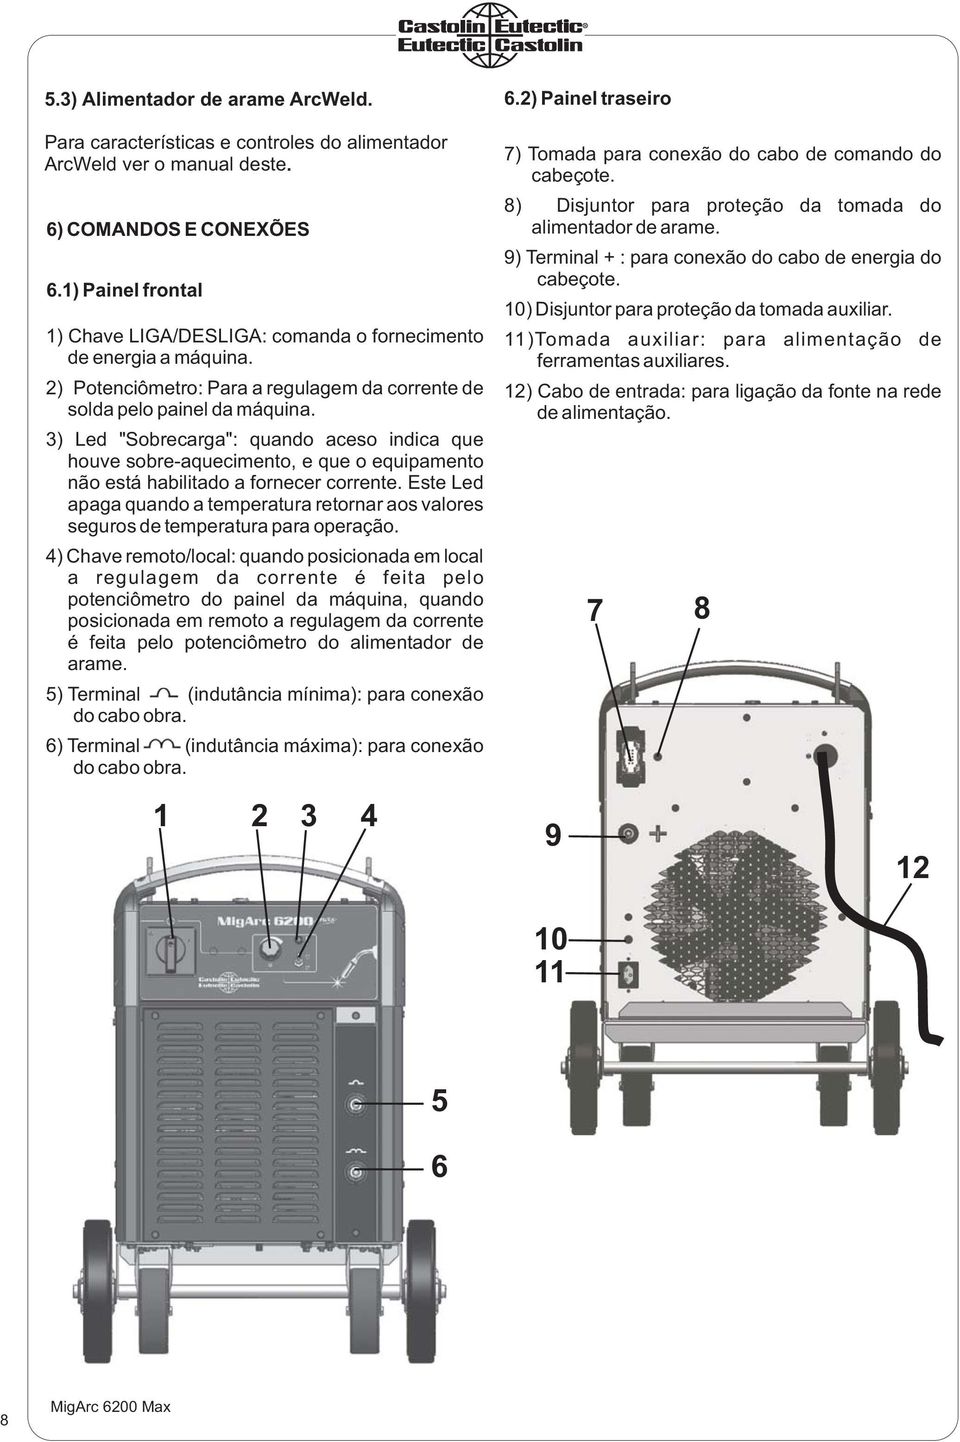 3) Led "Sobrecarga": quando aceso indica que houve sobre-aquecimento, e que o equipamento não está habilitado a fornecer corrente.